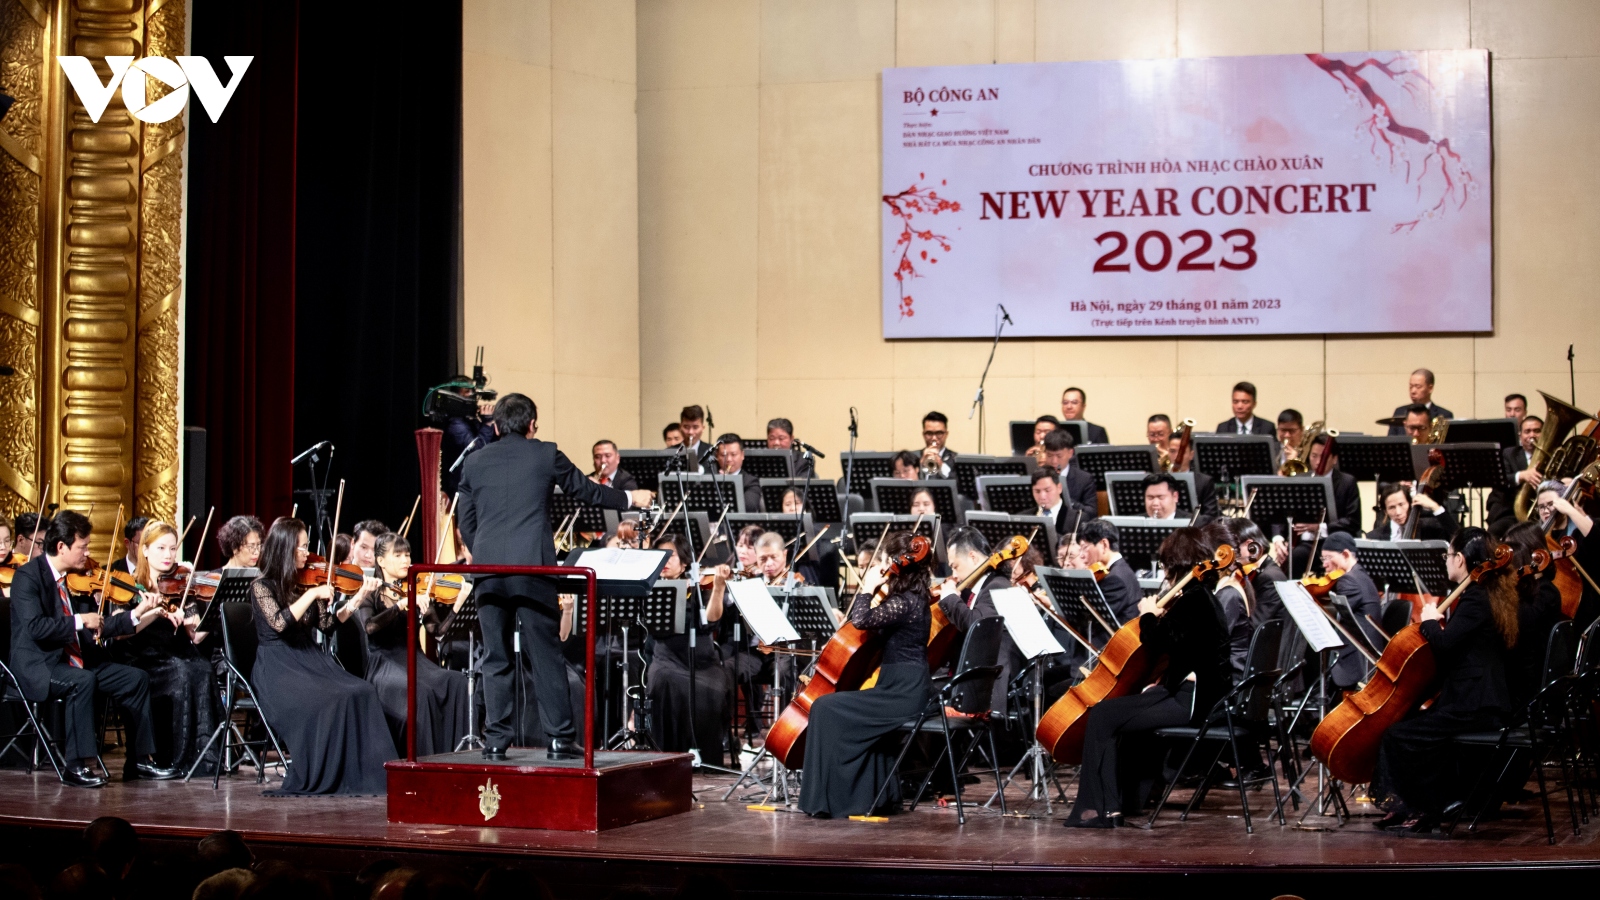 Rộn ràng chương trình Hoà nhạc chào Xuân “New Year Concert 2023”